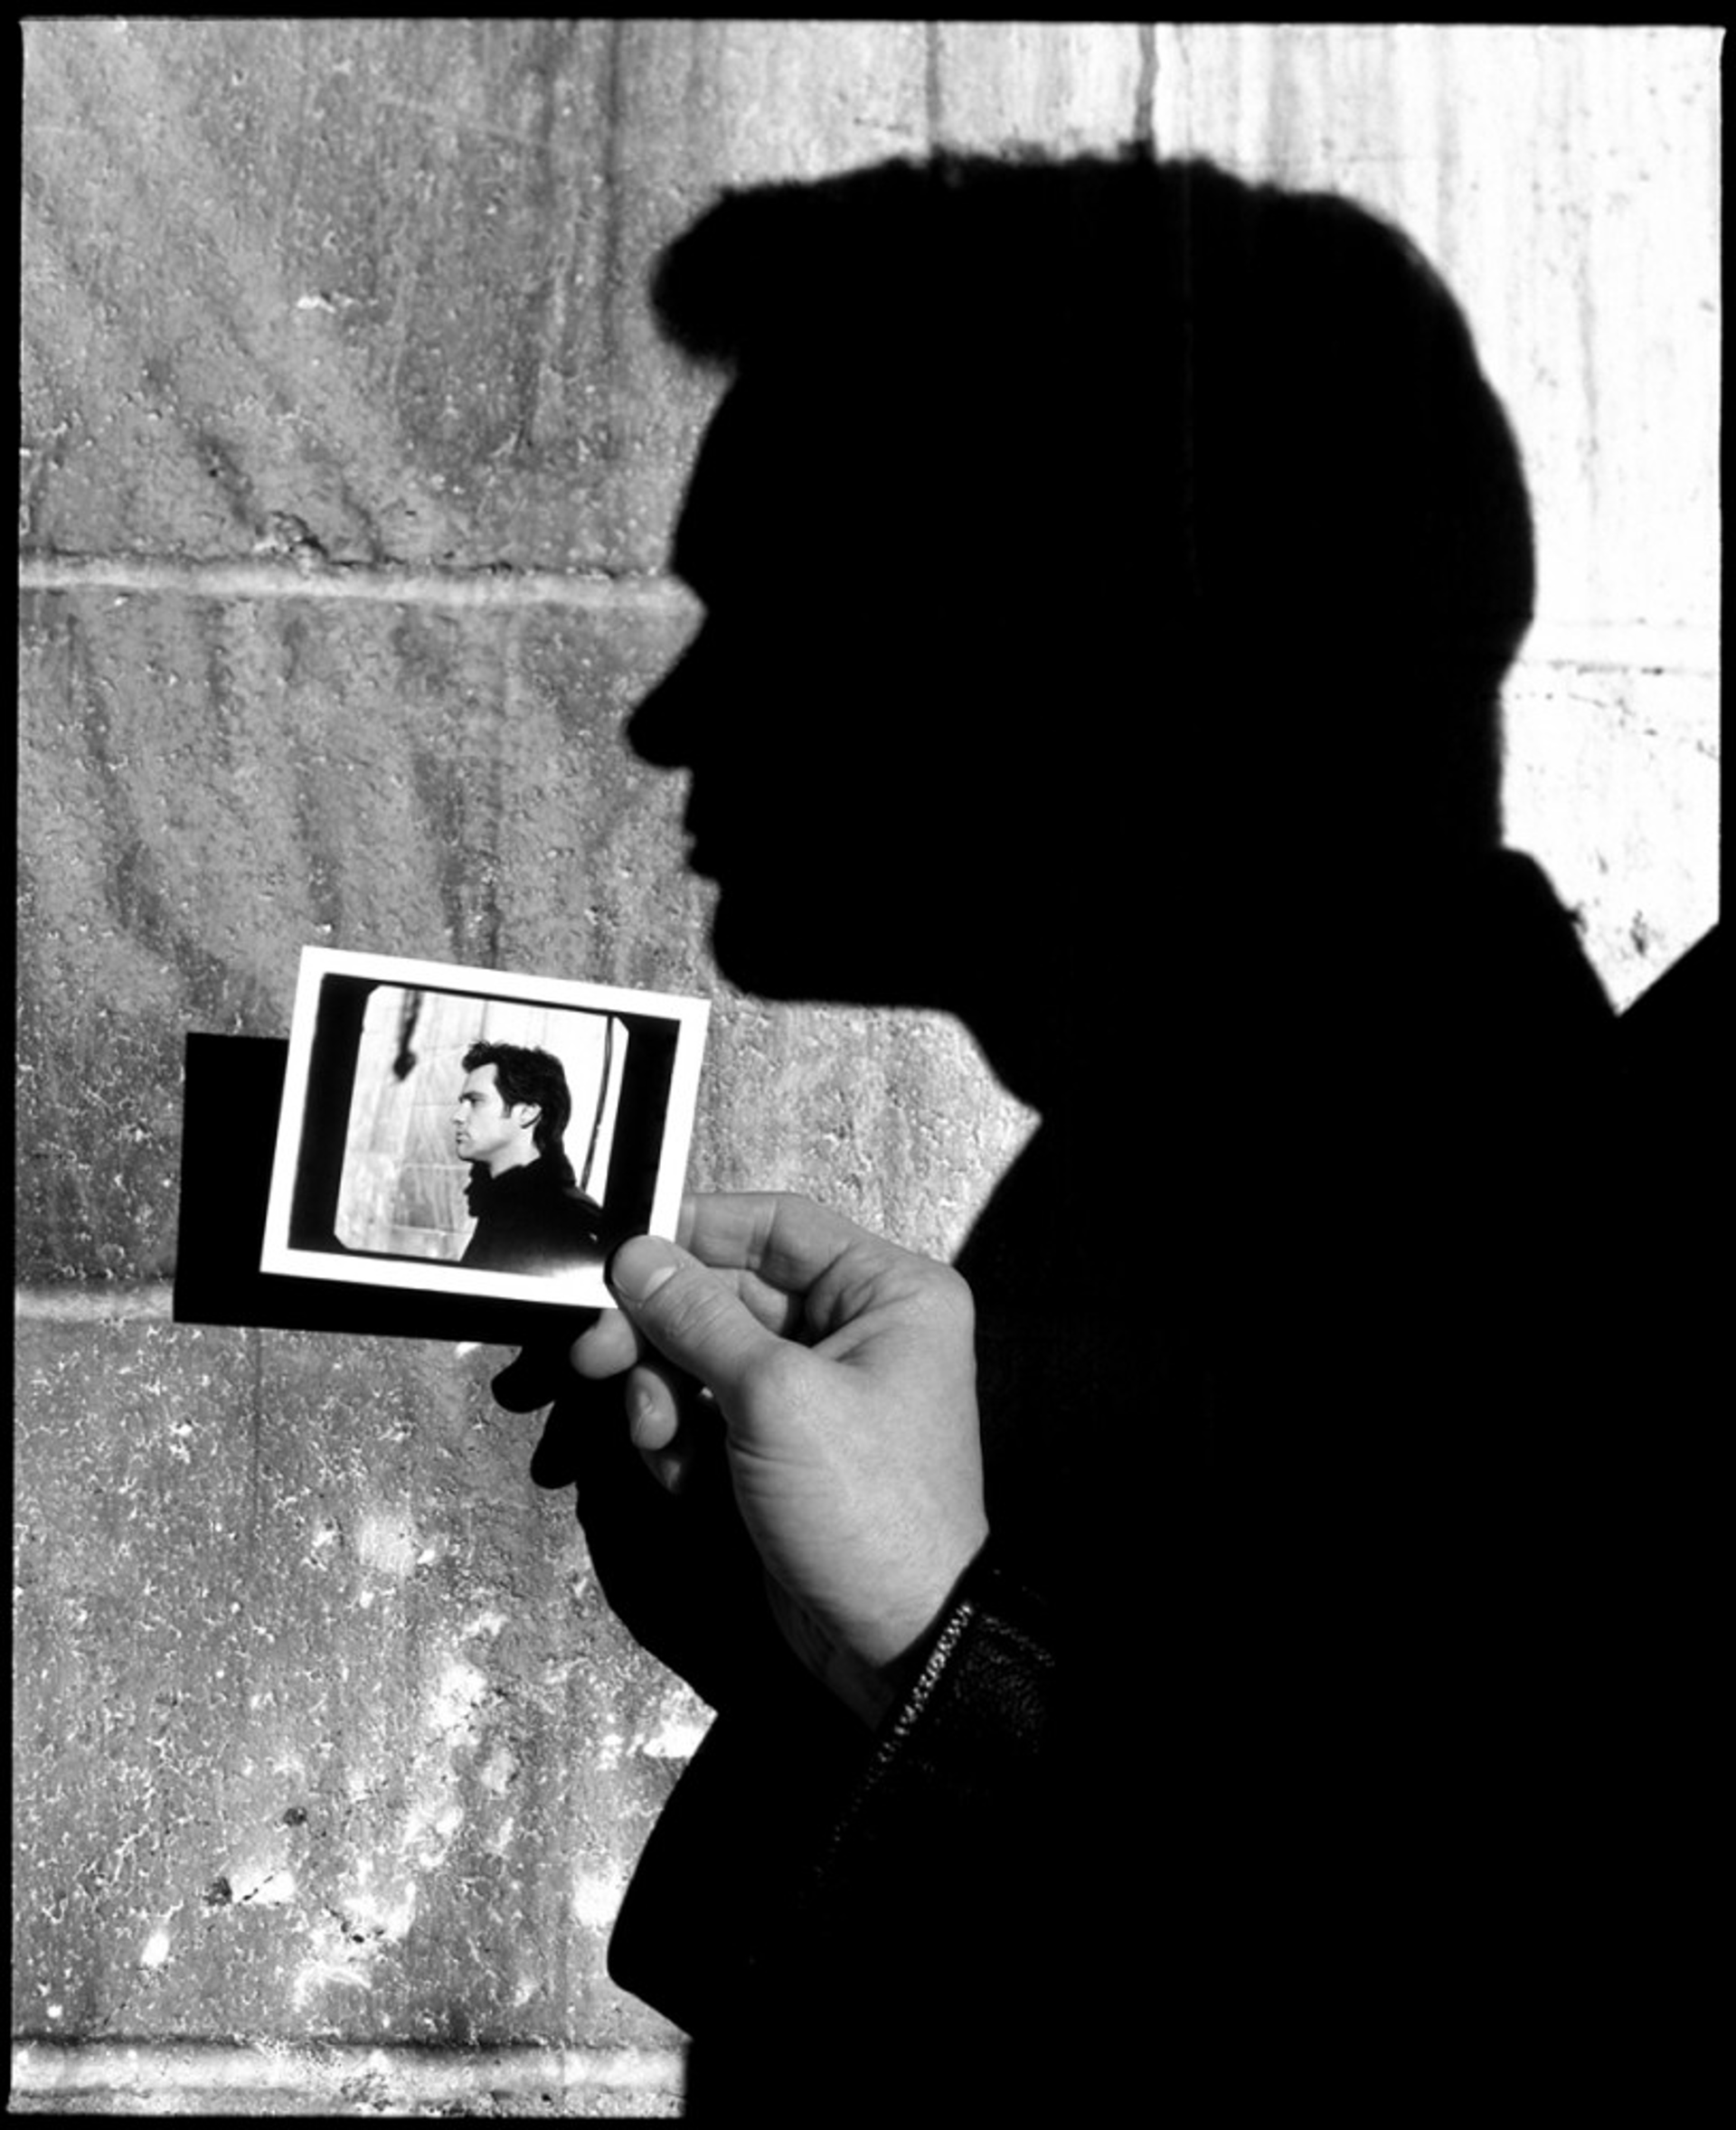 98012 Jim Carrey Polaroid BW by Timothy White